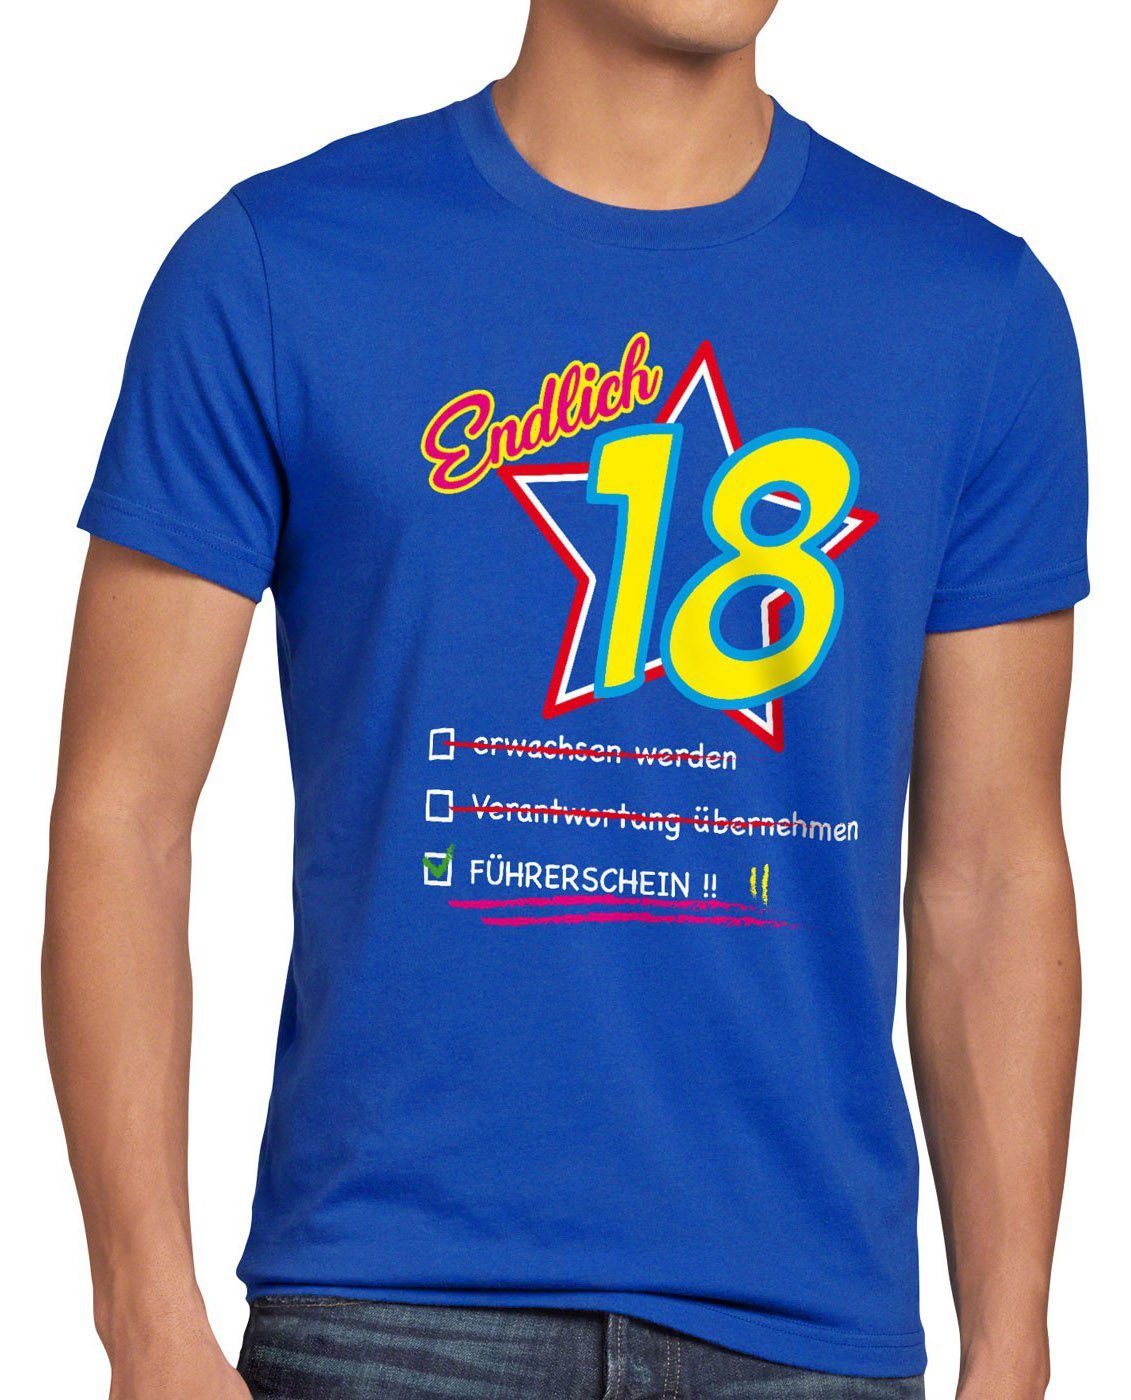 Führerschein blau Herren T-Shirt Endlich Fun achtzehn Party Print-Shirt Geburtstag style3 18 volljährig